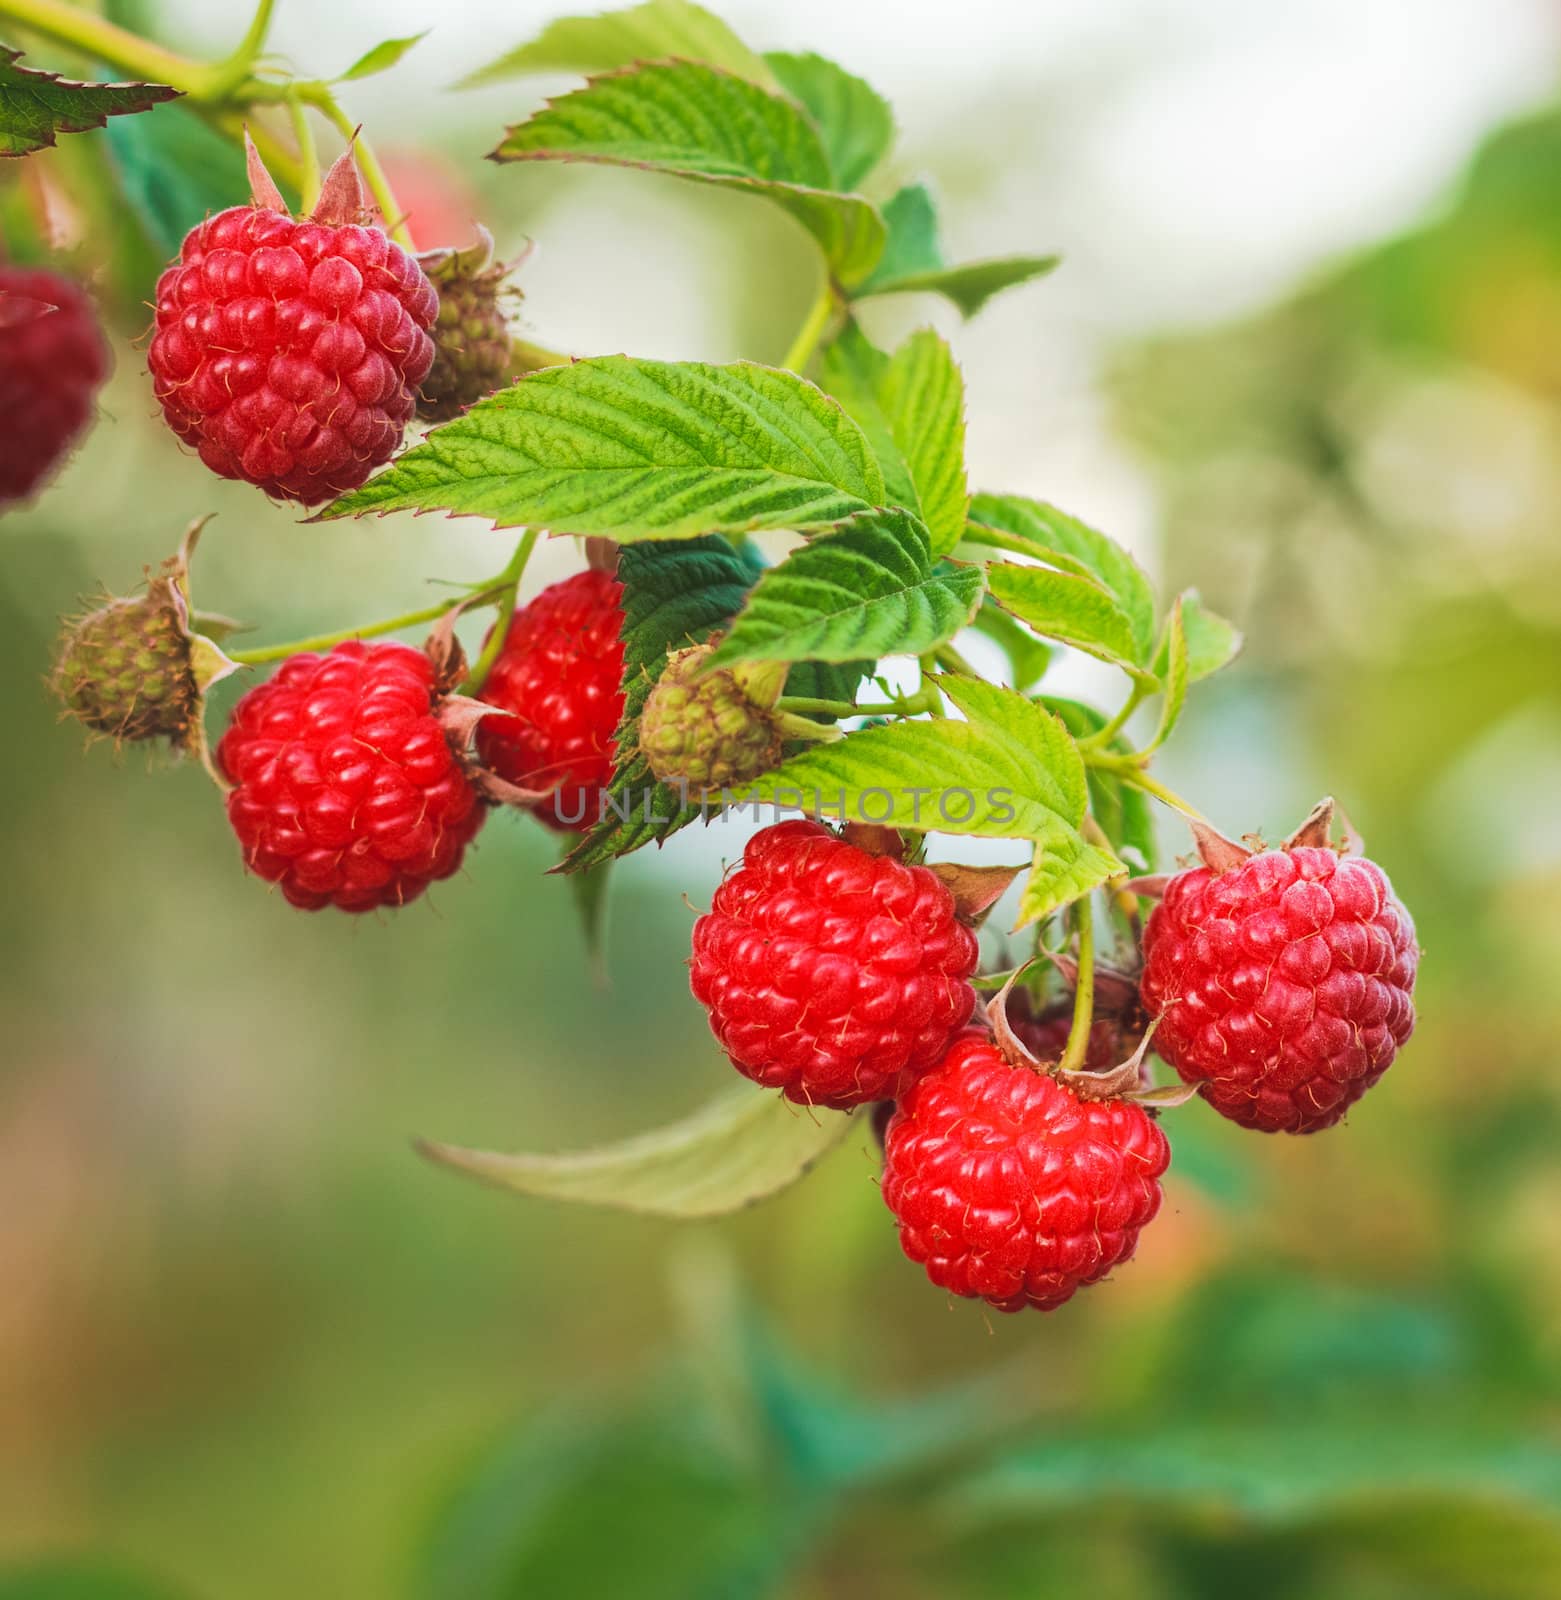 Raspberry. Raspberries. Growing Organic Berries closeup  by ryhor